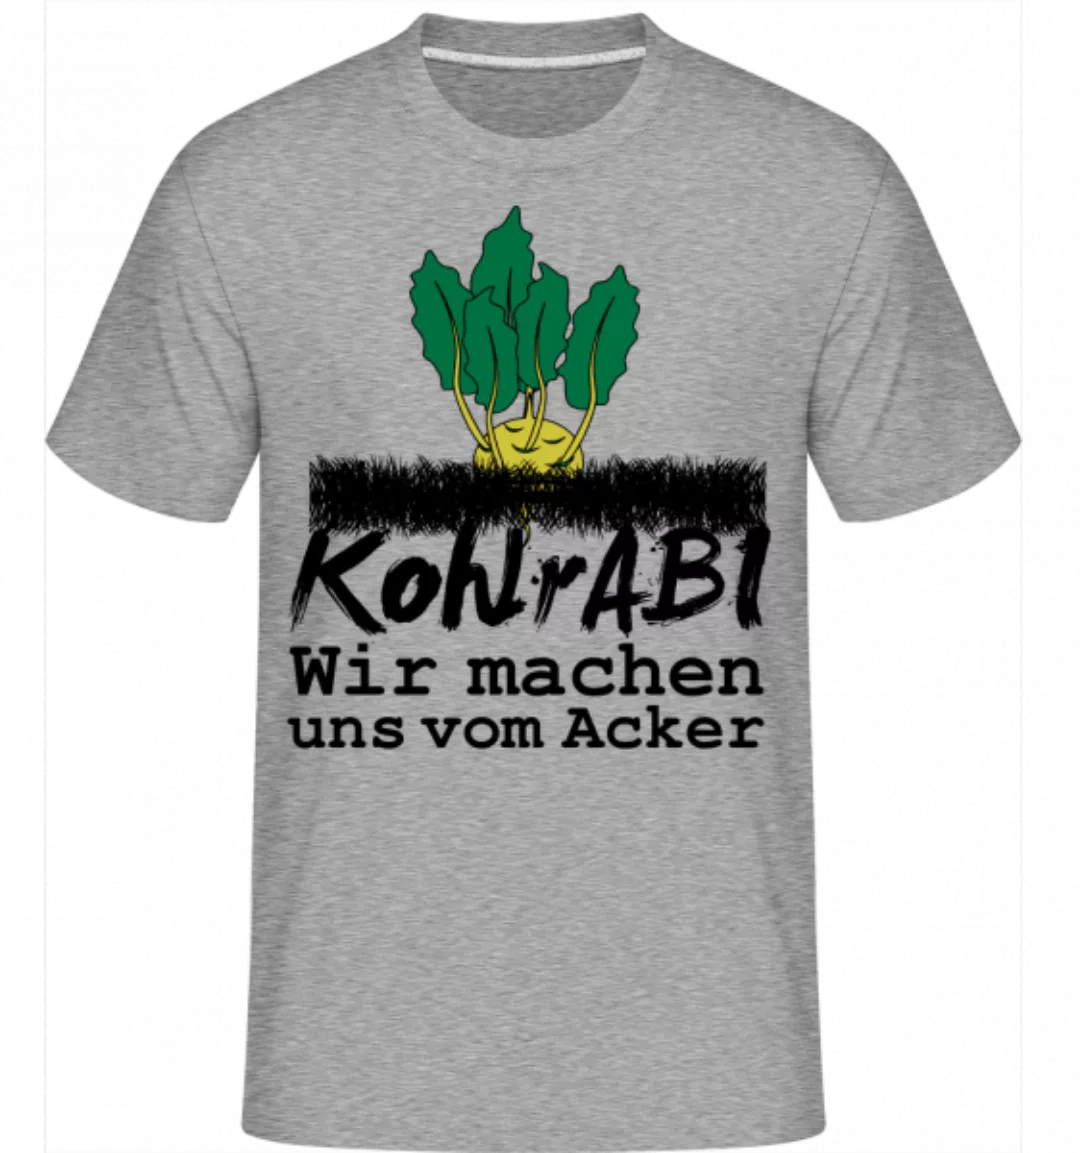 KohlrABI Macht Sich Vom Acker · Shirtinator Männer T-Shirt günstig online kaufen